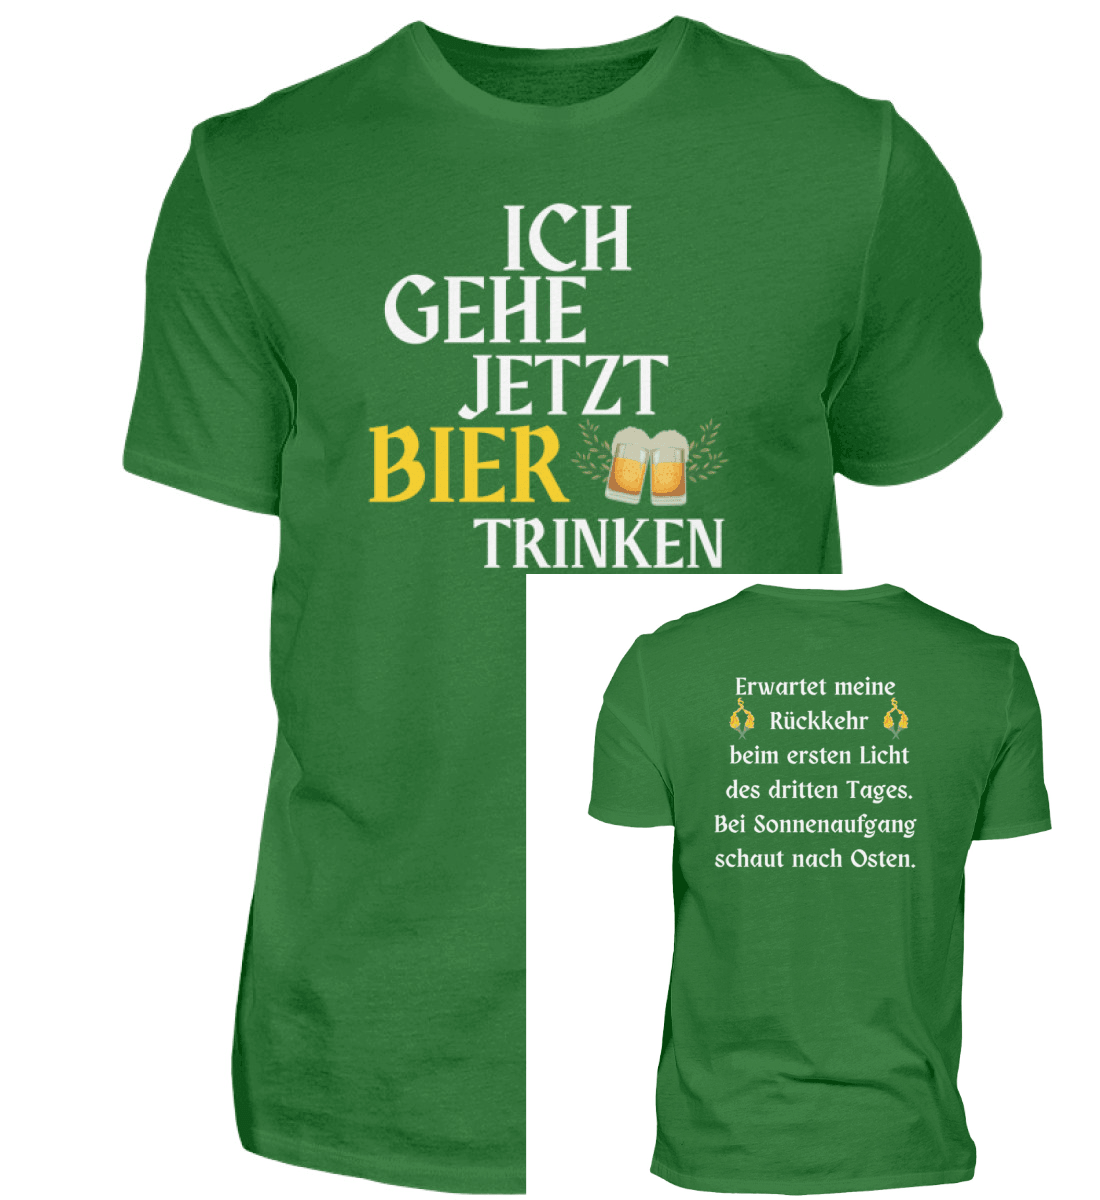 BIER TRINKEN - Herren Shirt - einschenken24.de